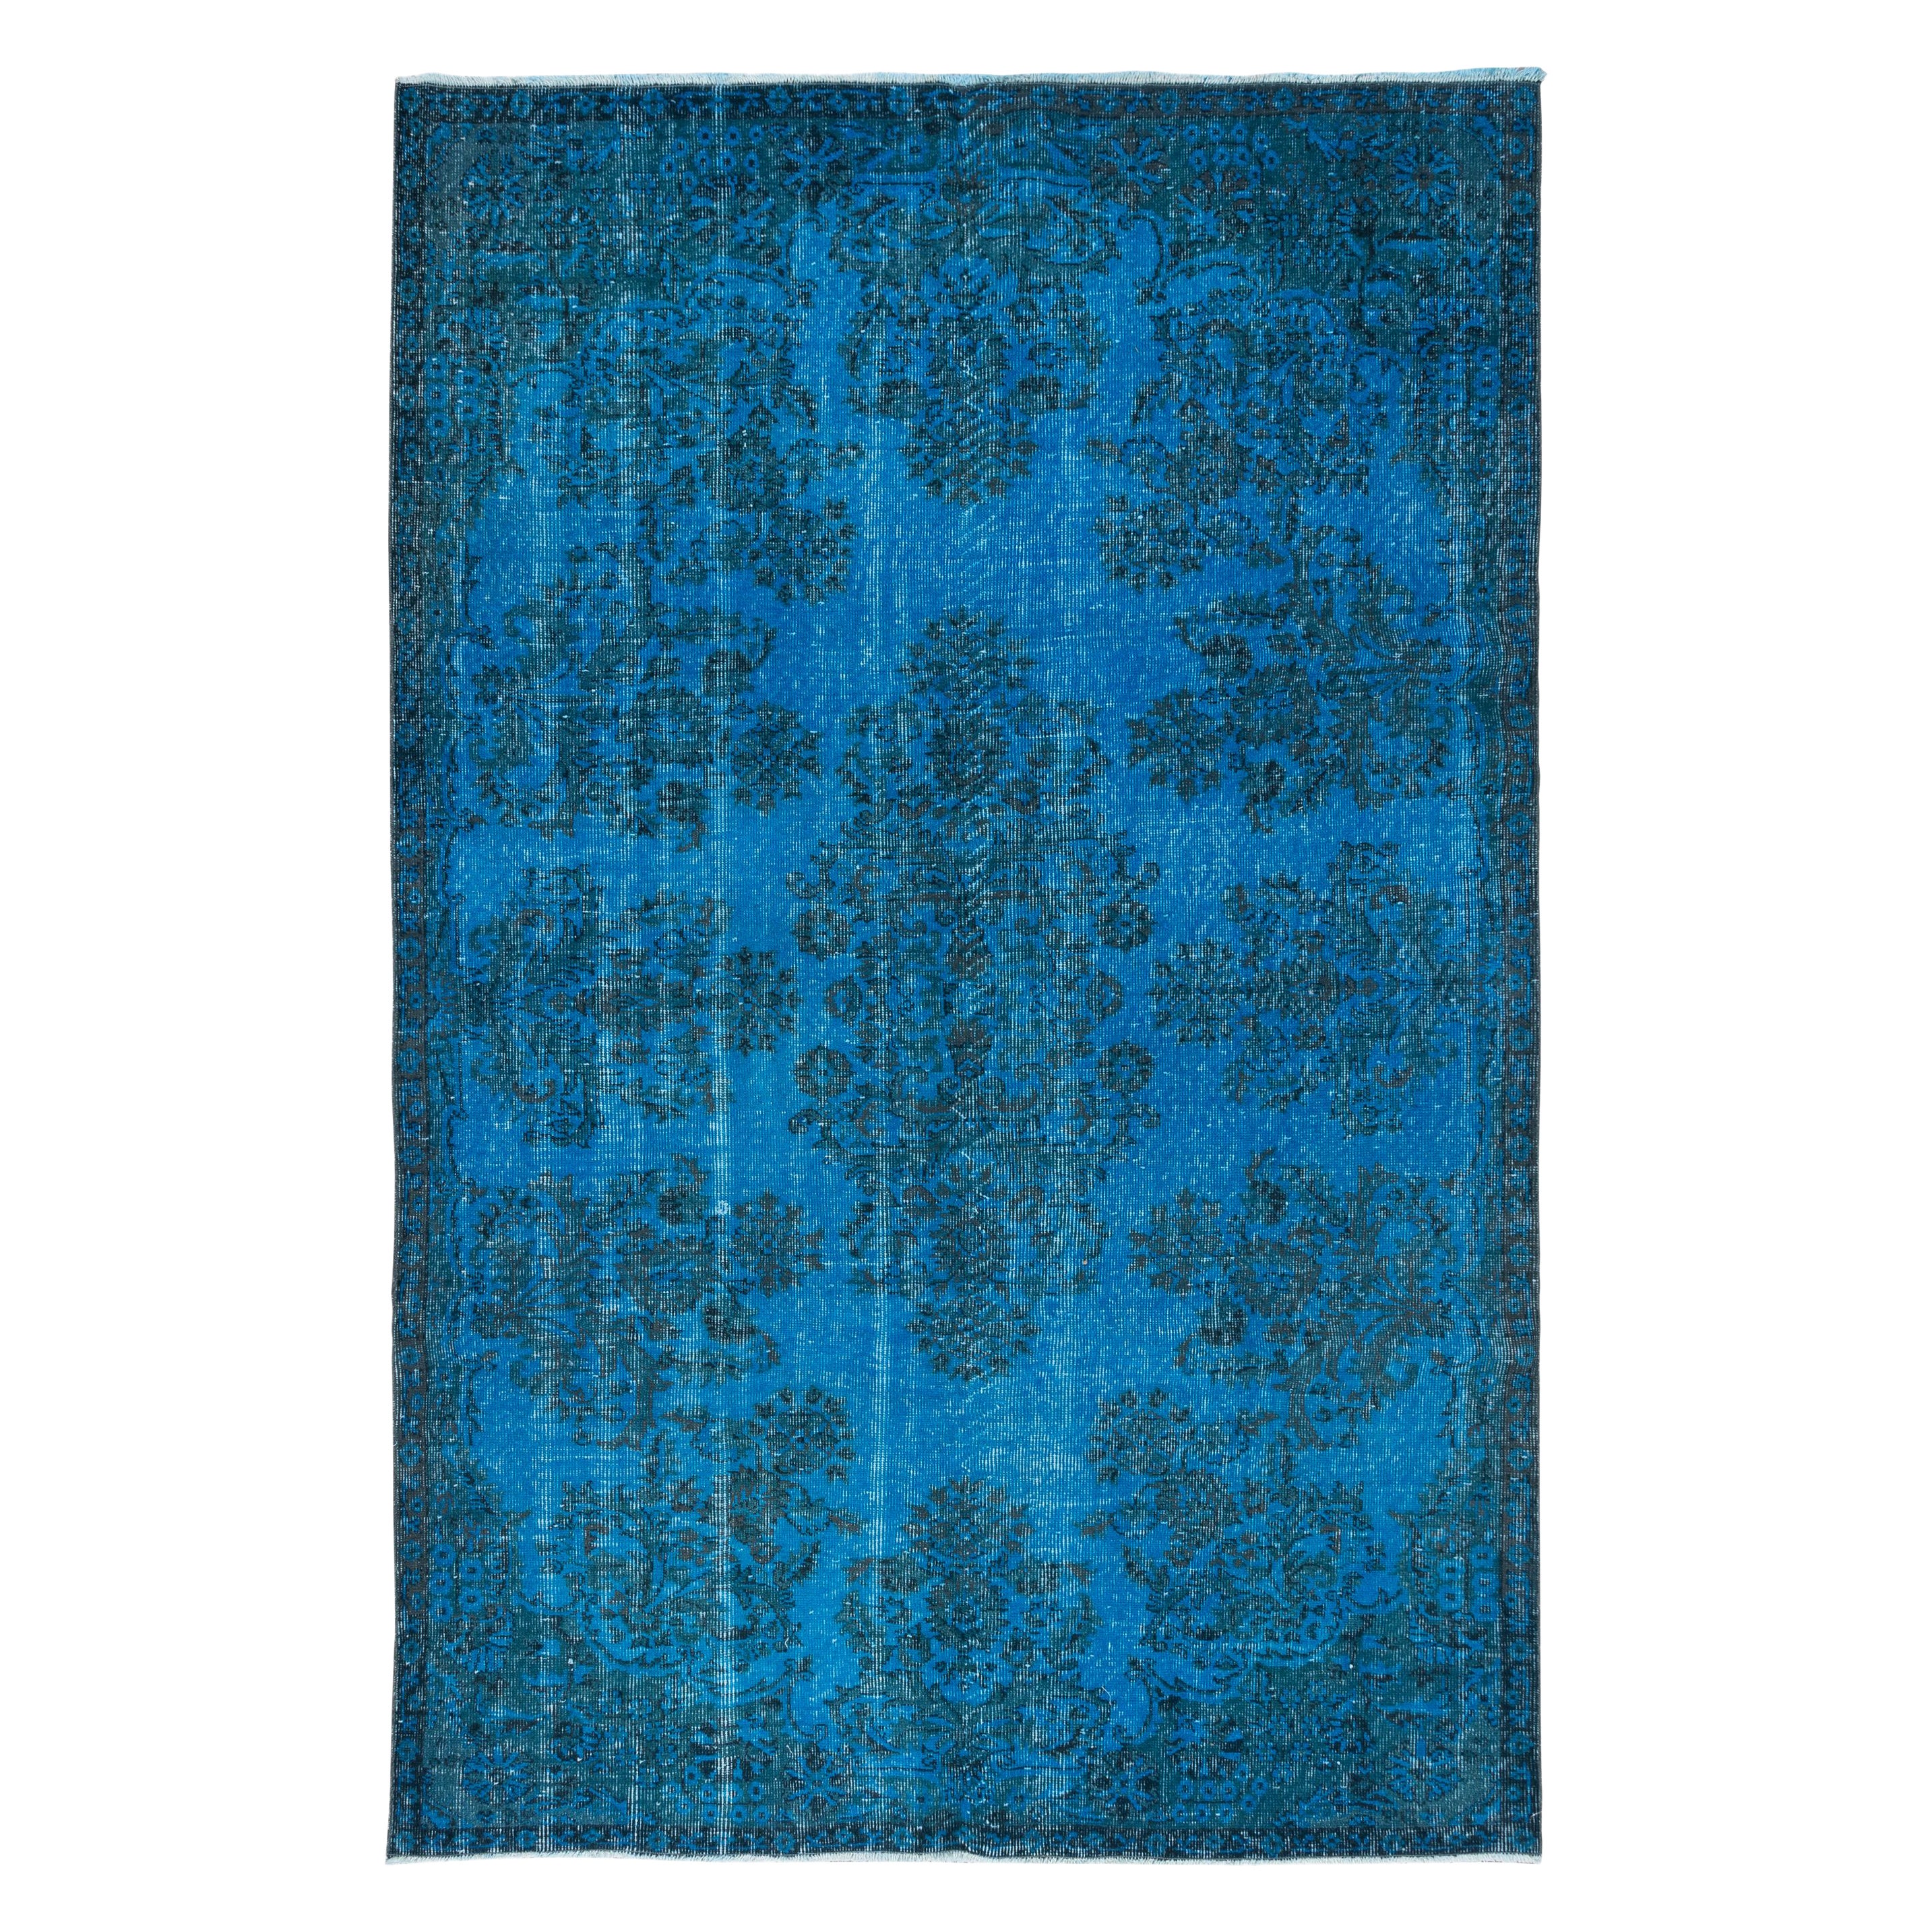 5.6x8.6 Ft Blauer moderner Teppich aus der Türkei, handgefertigter Teppich für das Wohnzimmer